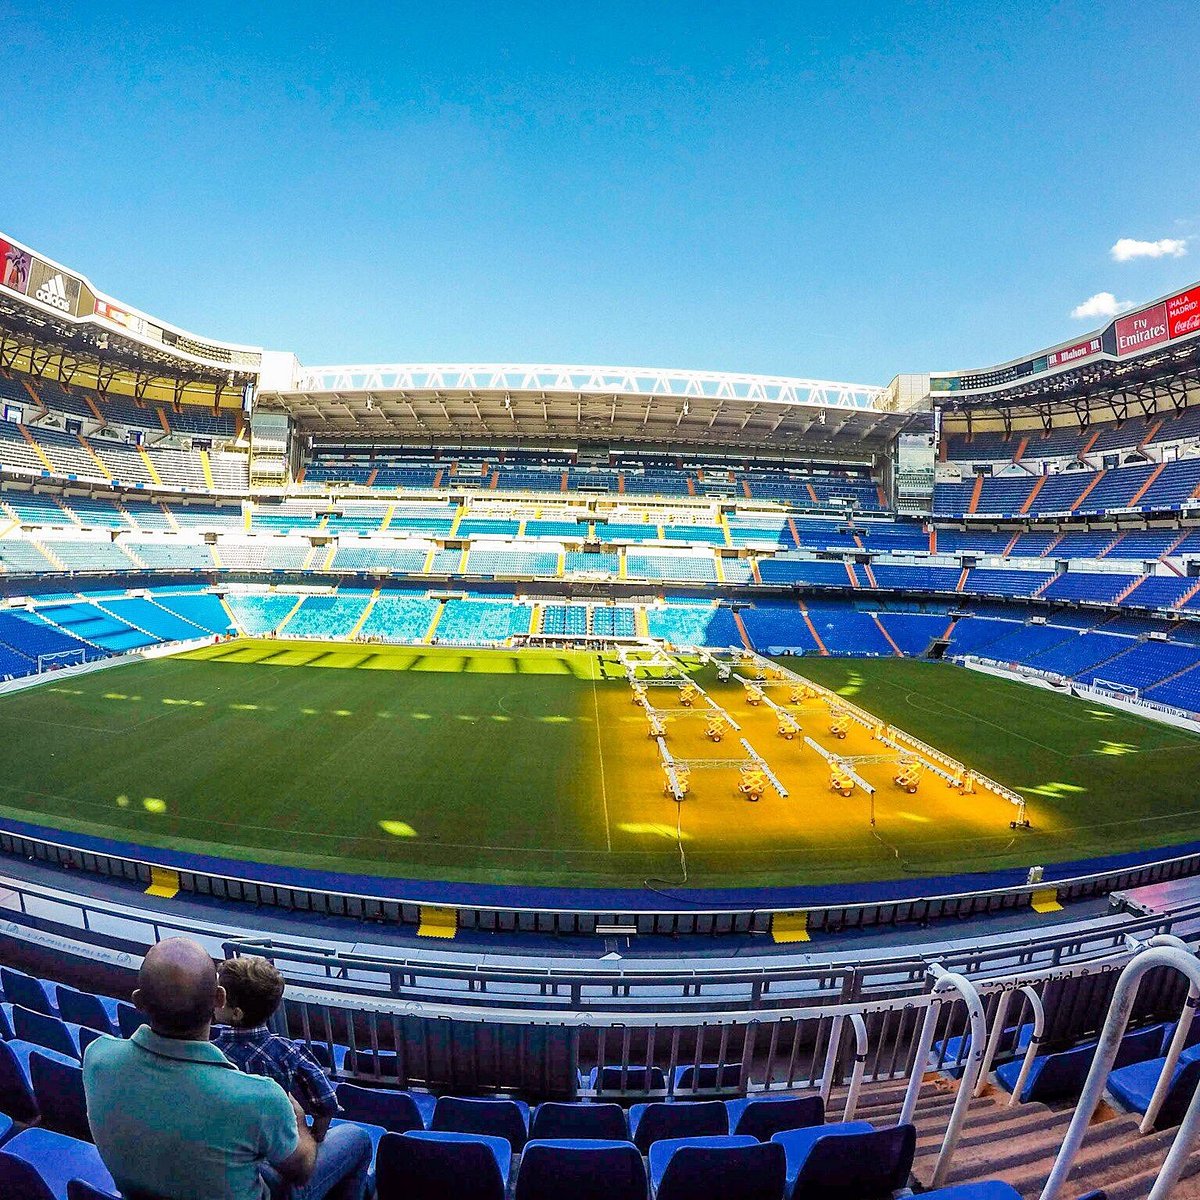 Estadio de Santiago Bernabéu, Spain - Warmup